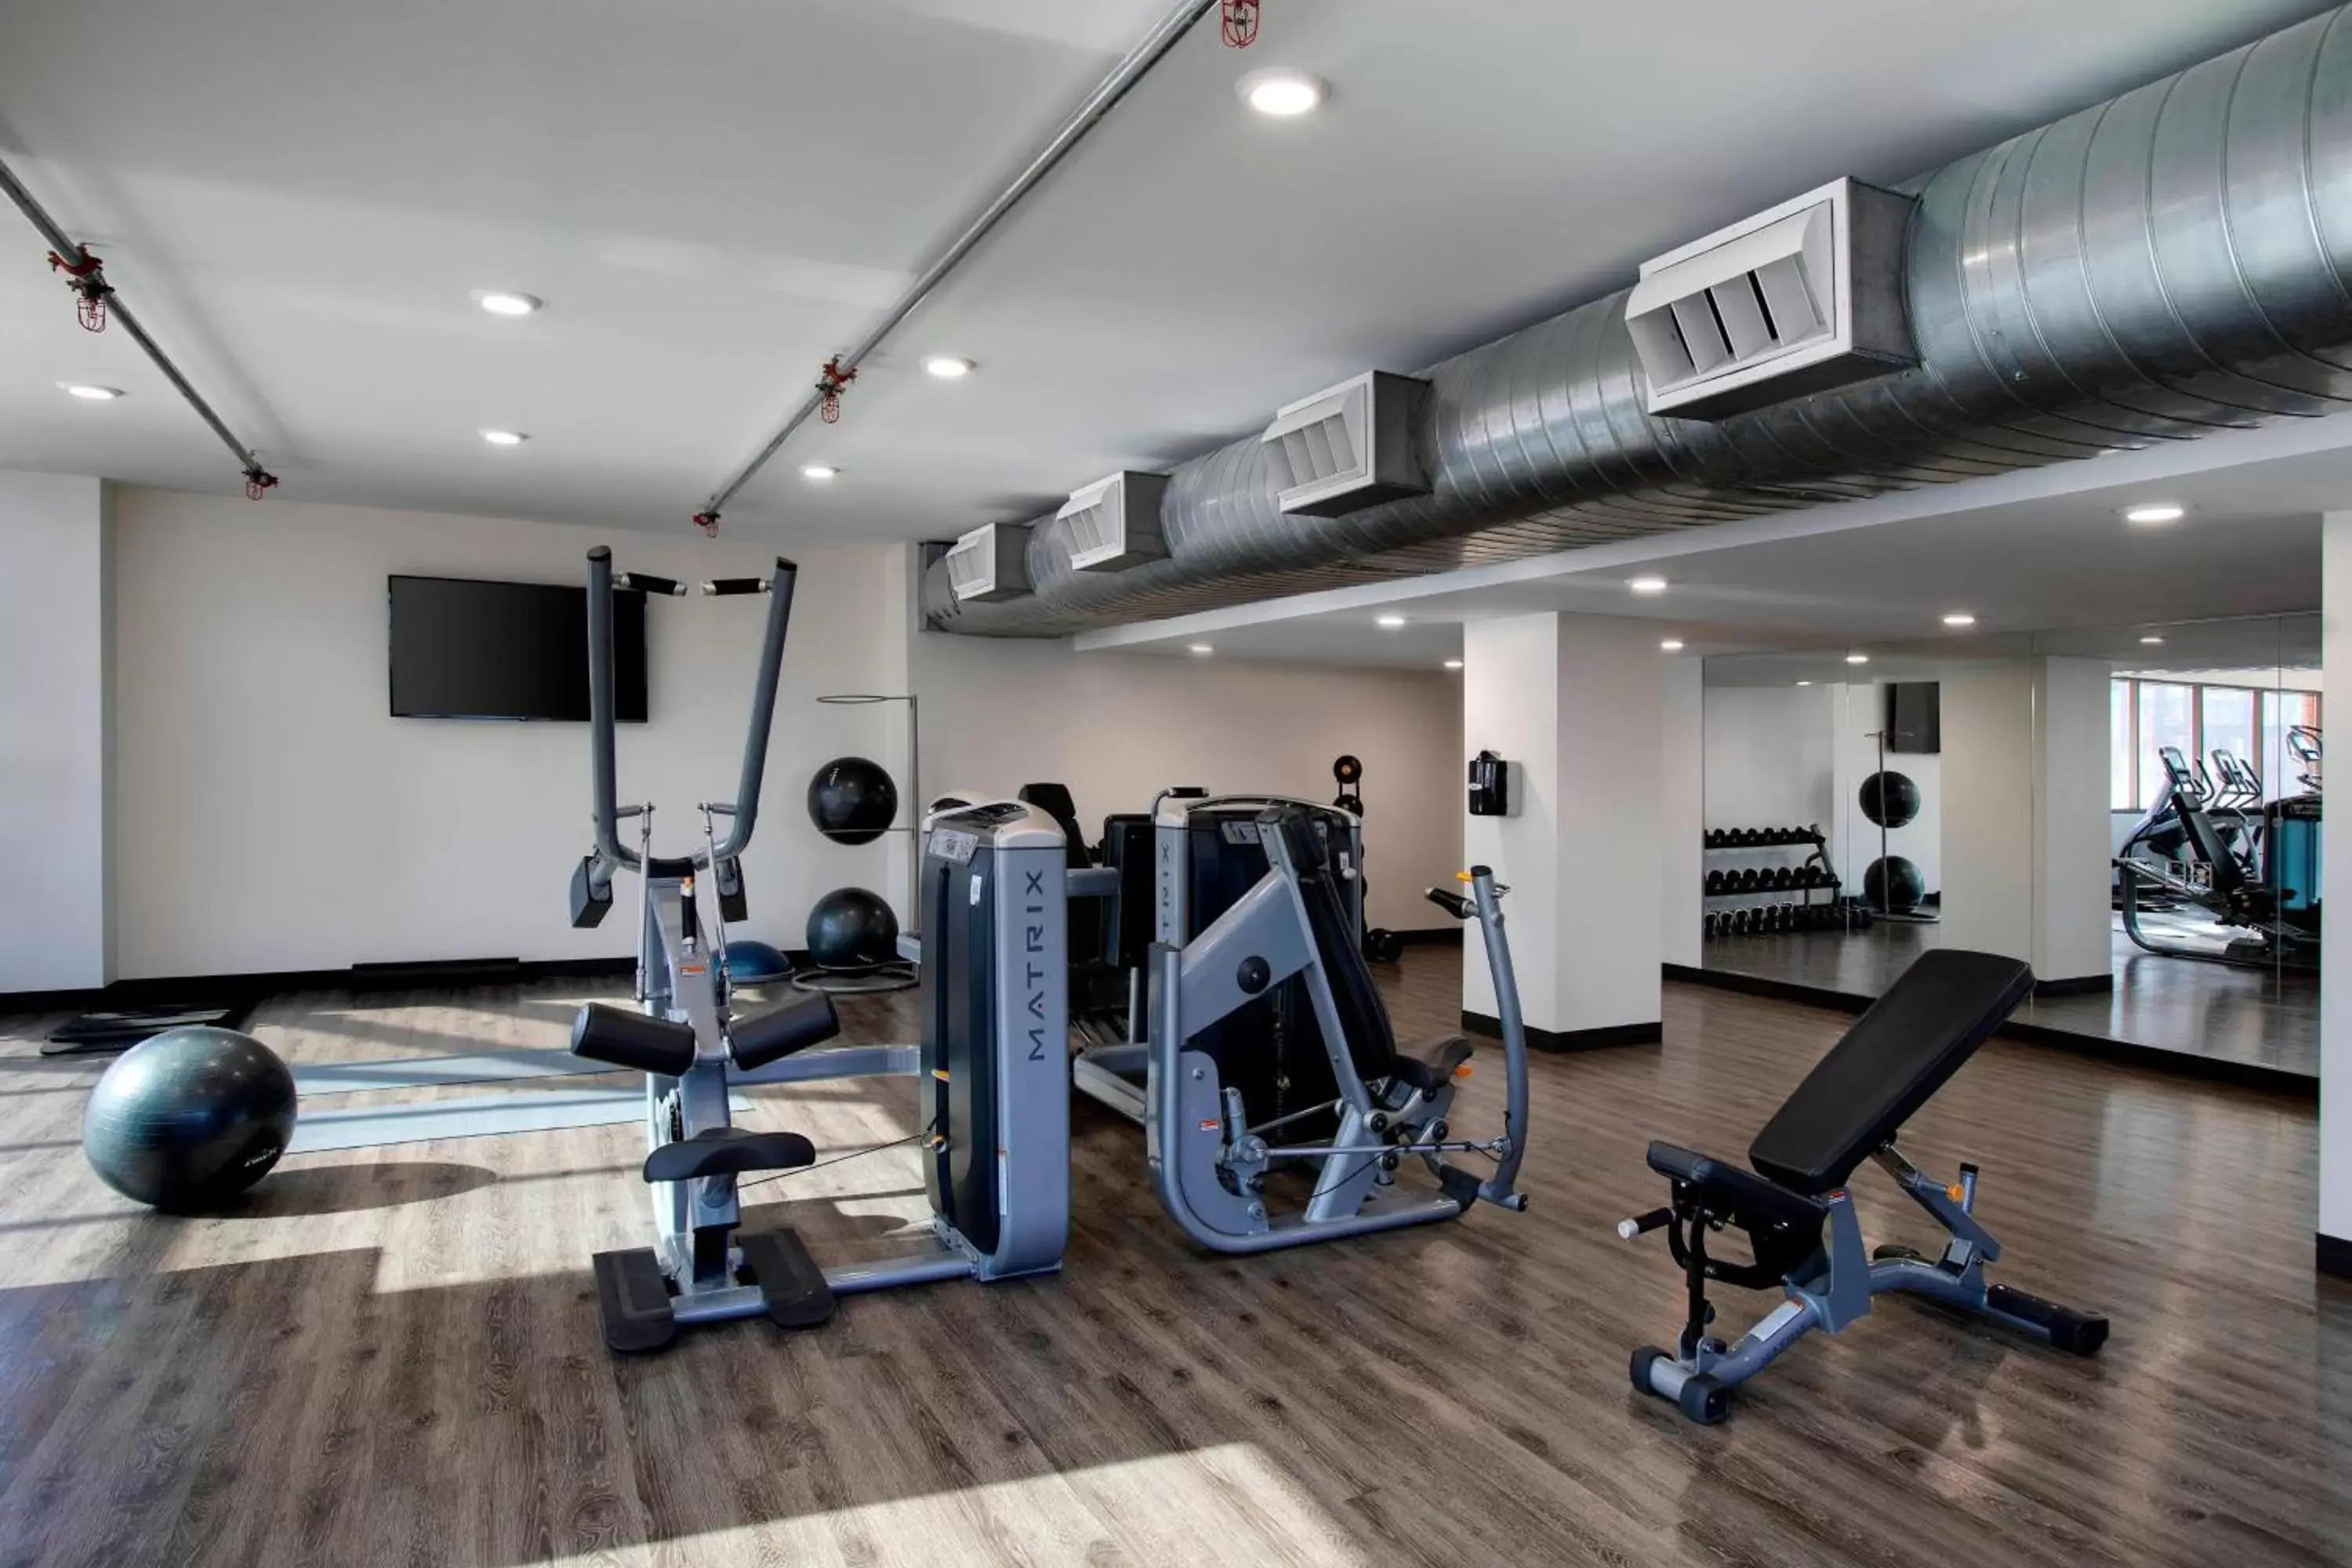 Fitness centre/facilities, Fitness Center/Facilities in Winston-Salem Marriott